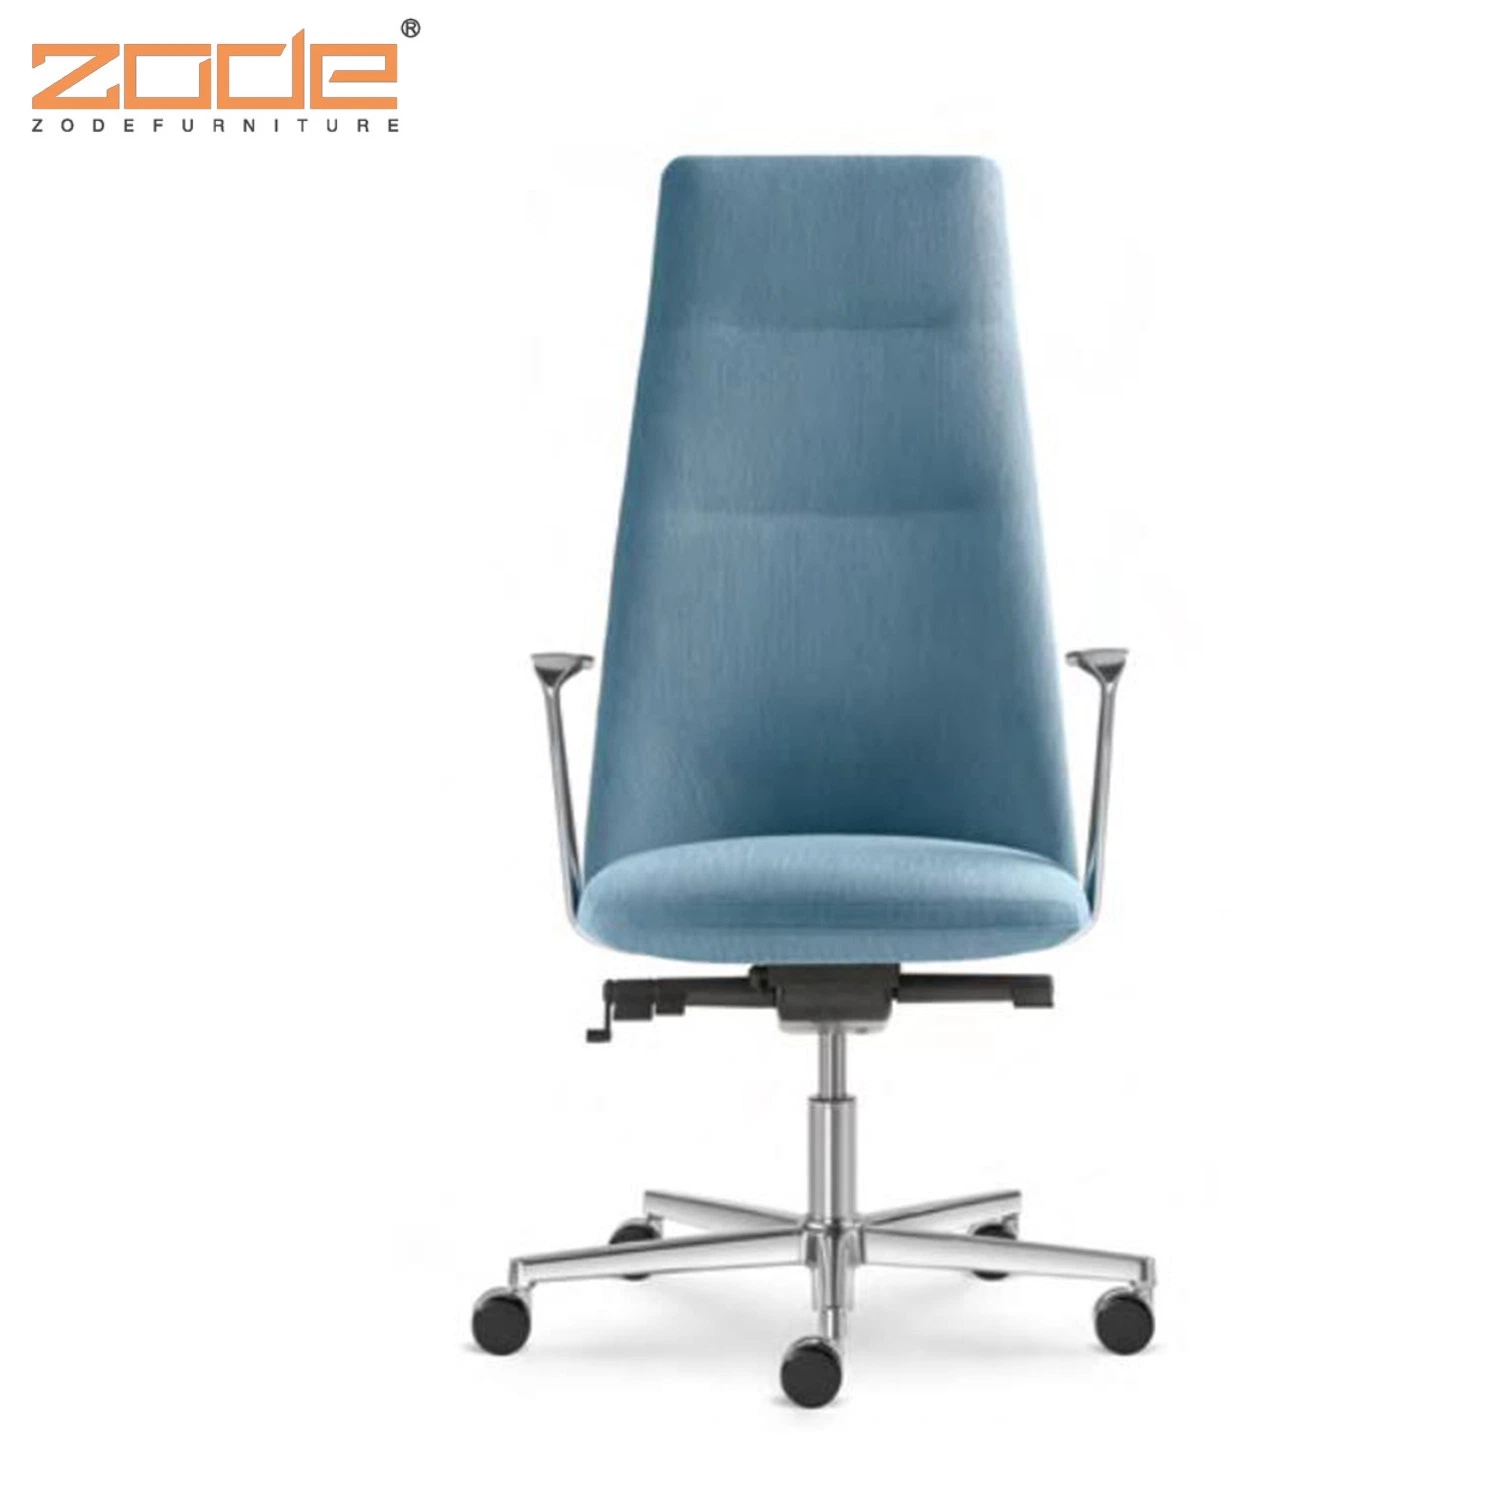 Silla ejecutiva Silla Silla ergonómica tejido de malla para sillas de oficina